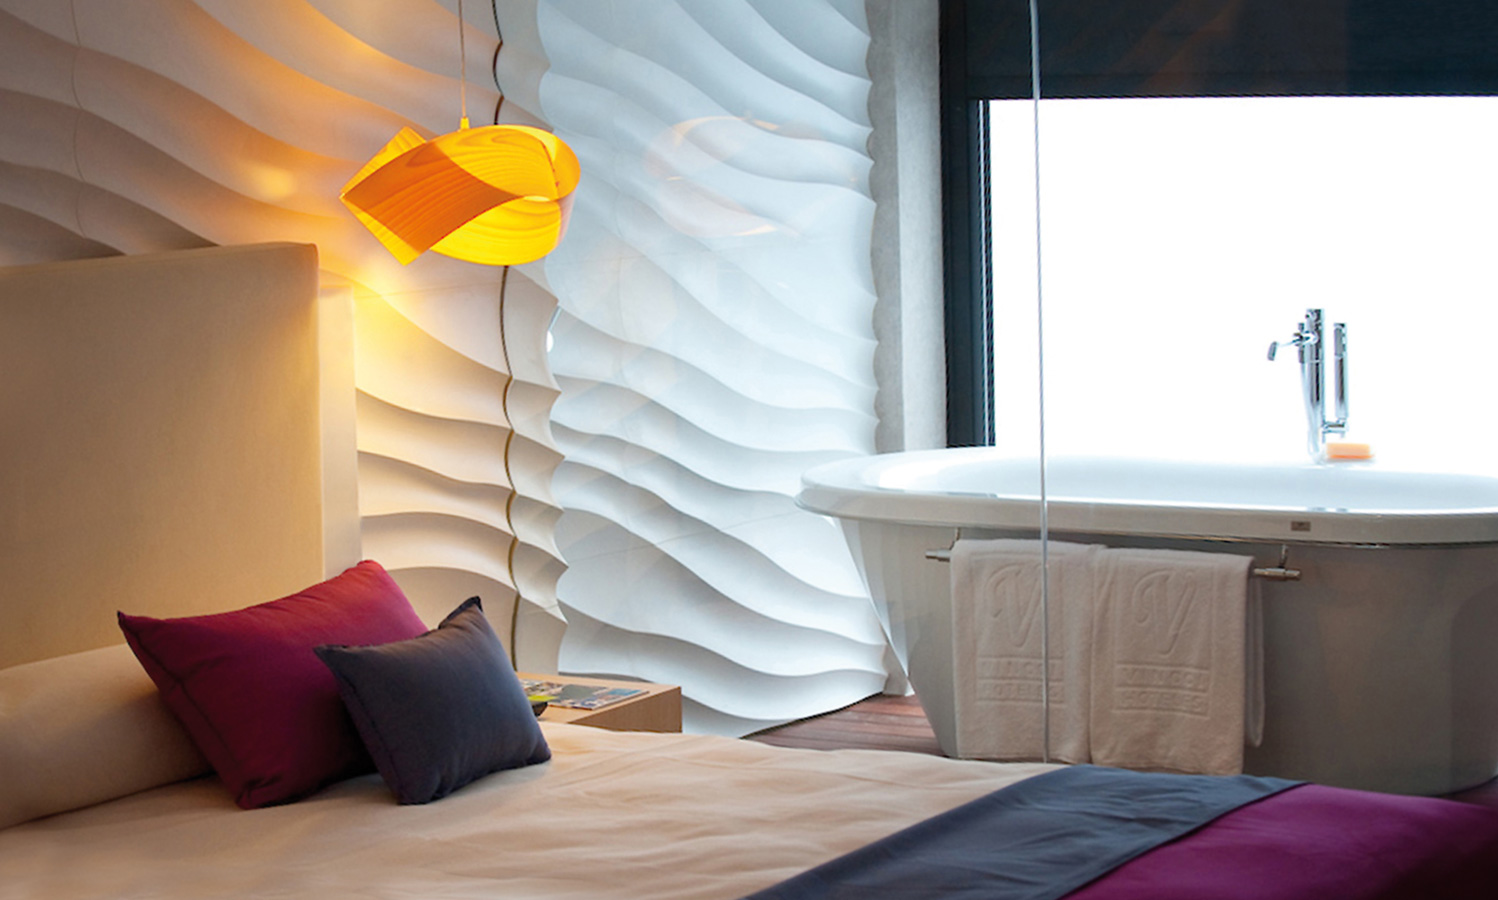 lzf-nut-wood-lamp-hotel-room1